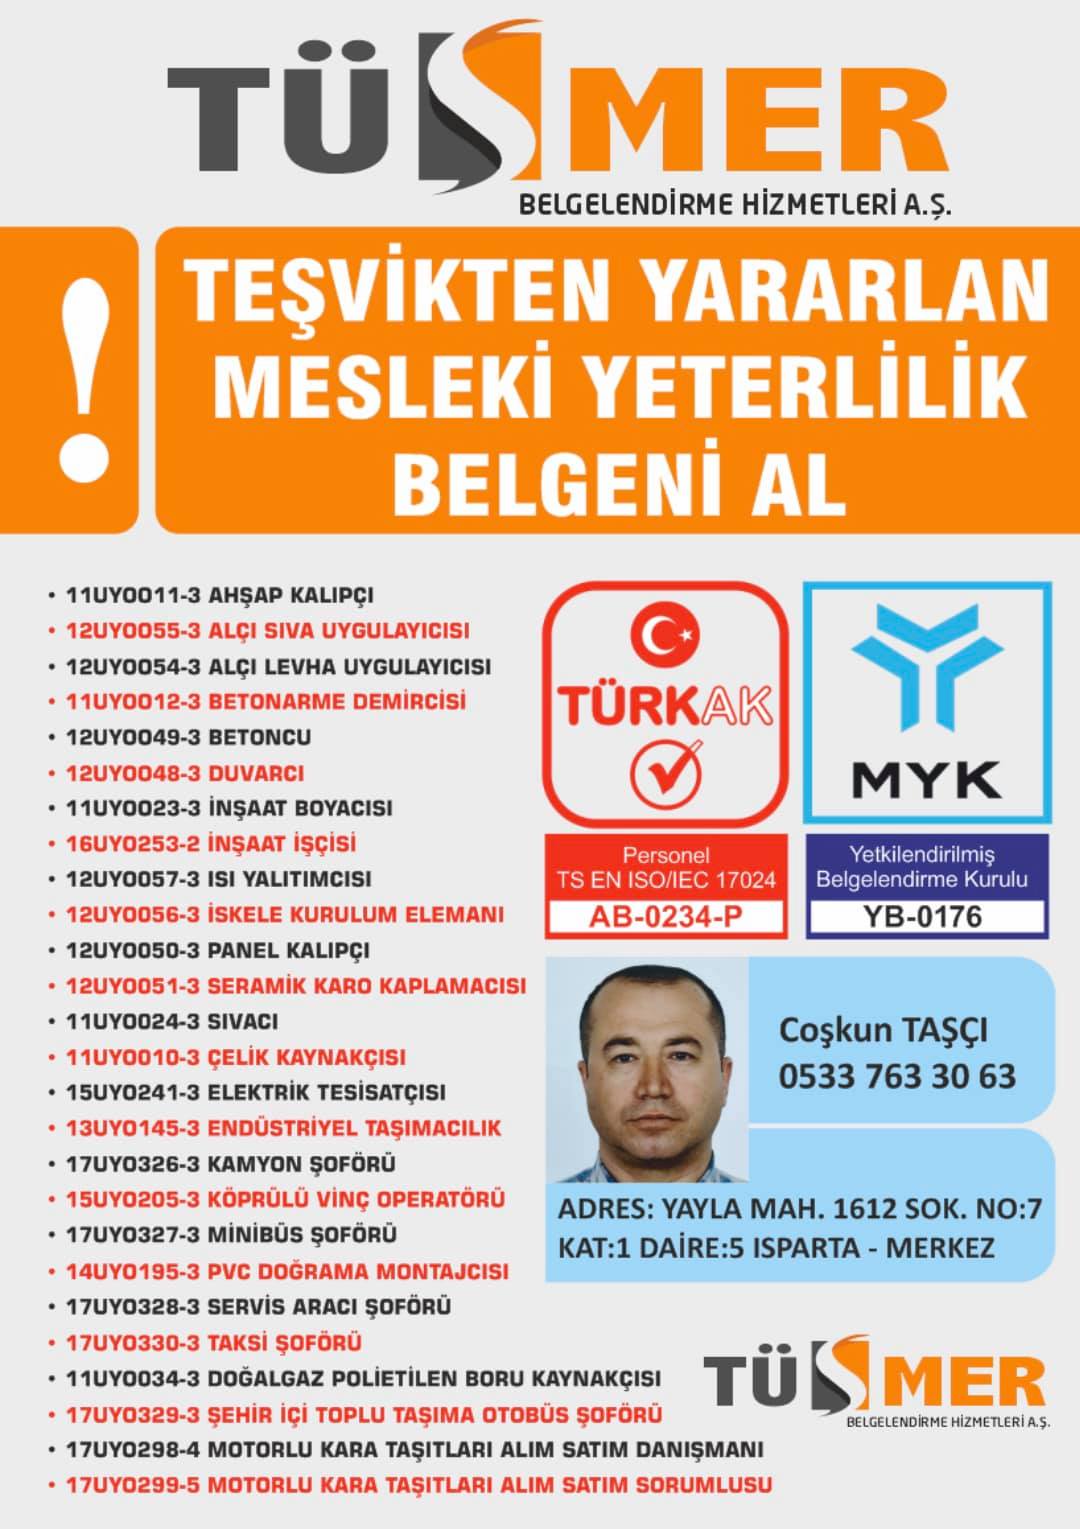 MYK MESLEKİ YETERLİLİK BELGESİ Gayrettepe Beşiktaş İstanbul